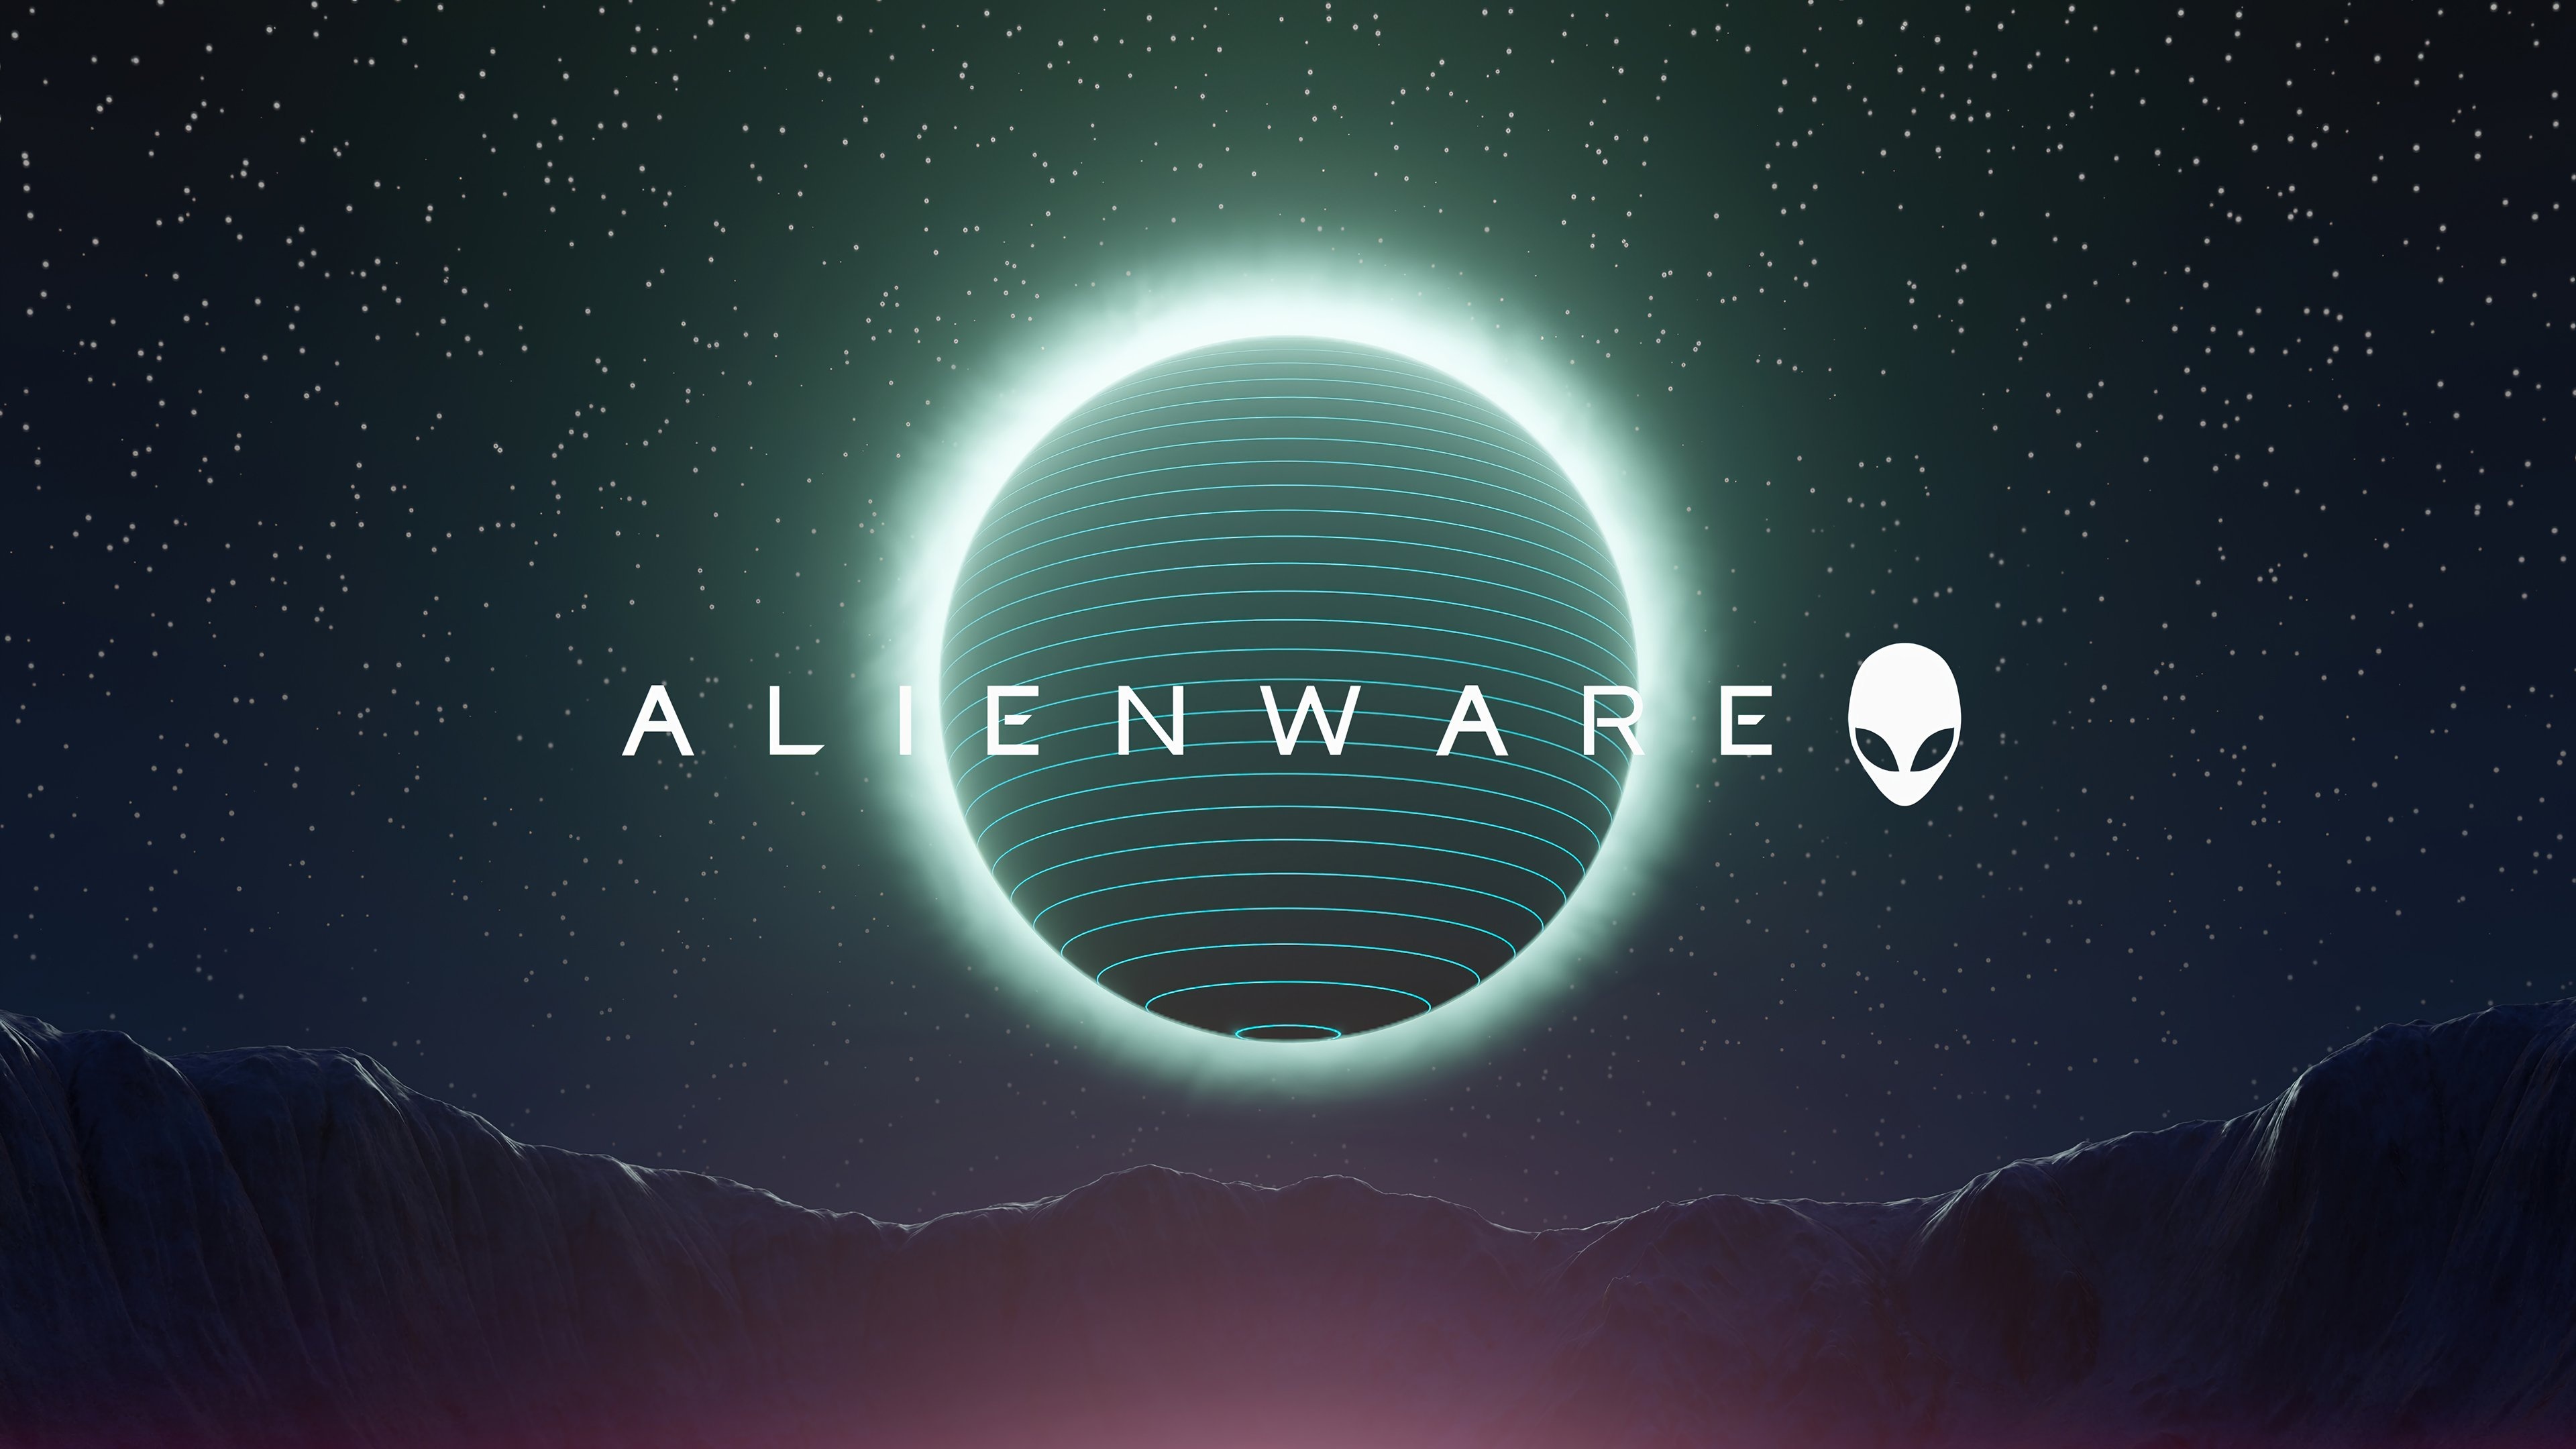 Alienware, Alienware logo, High-tech branding, Gaming aesthetics, 3840x2160 4K Desktop